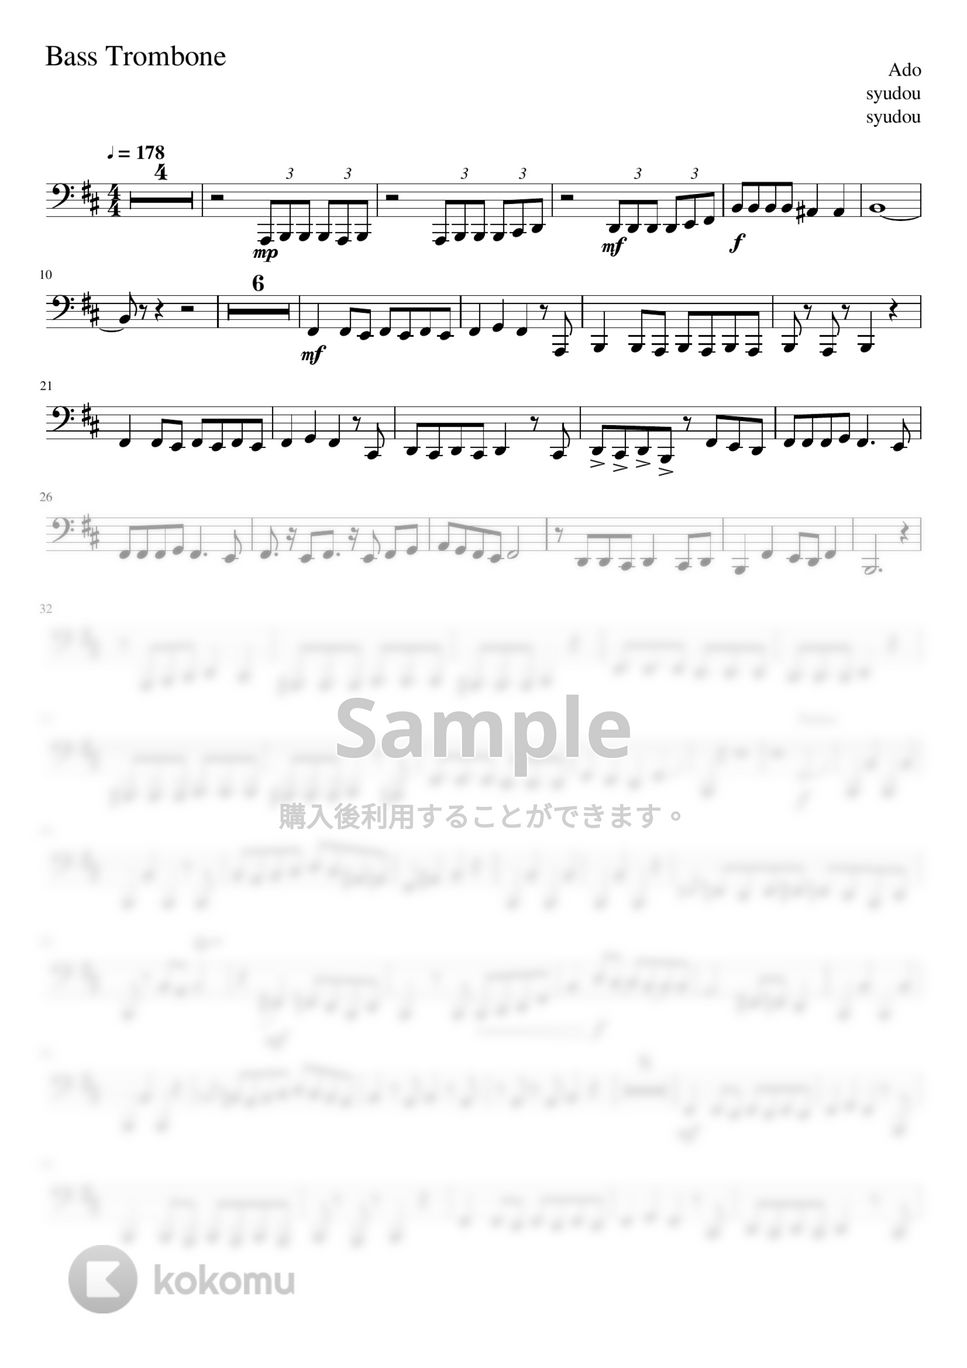 Ado - うっせぇわ (-Bass Trombone Solo- 原キー) by Creampuff